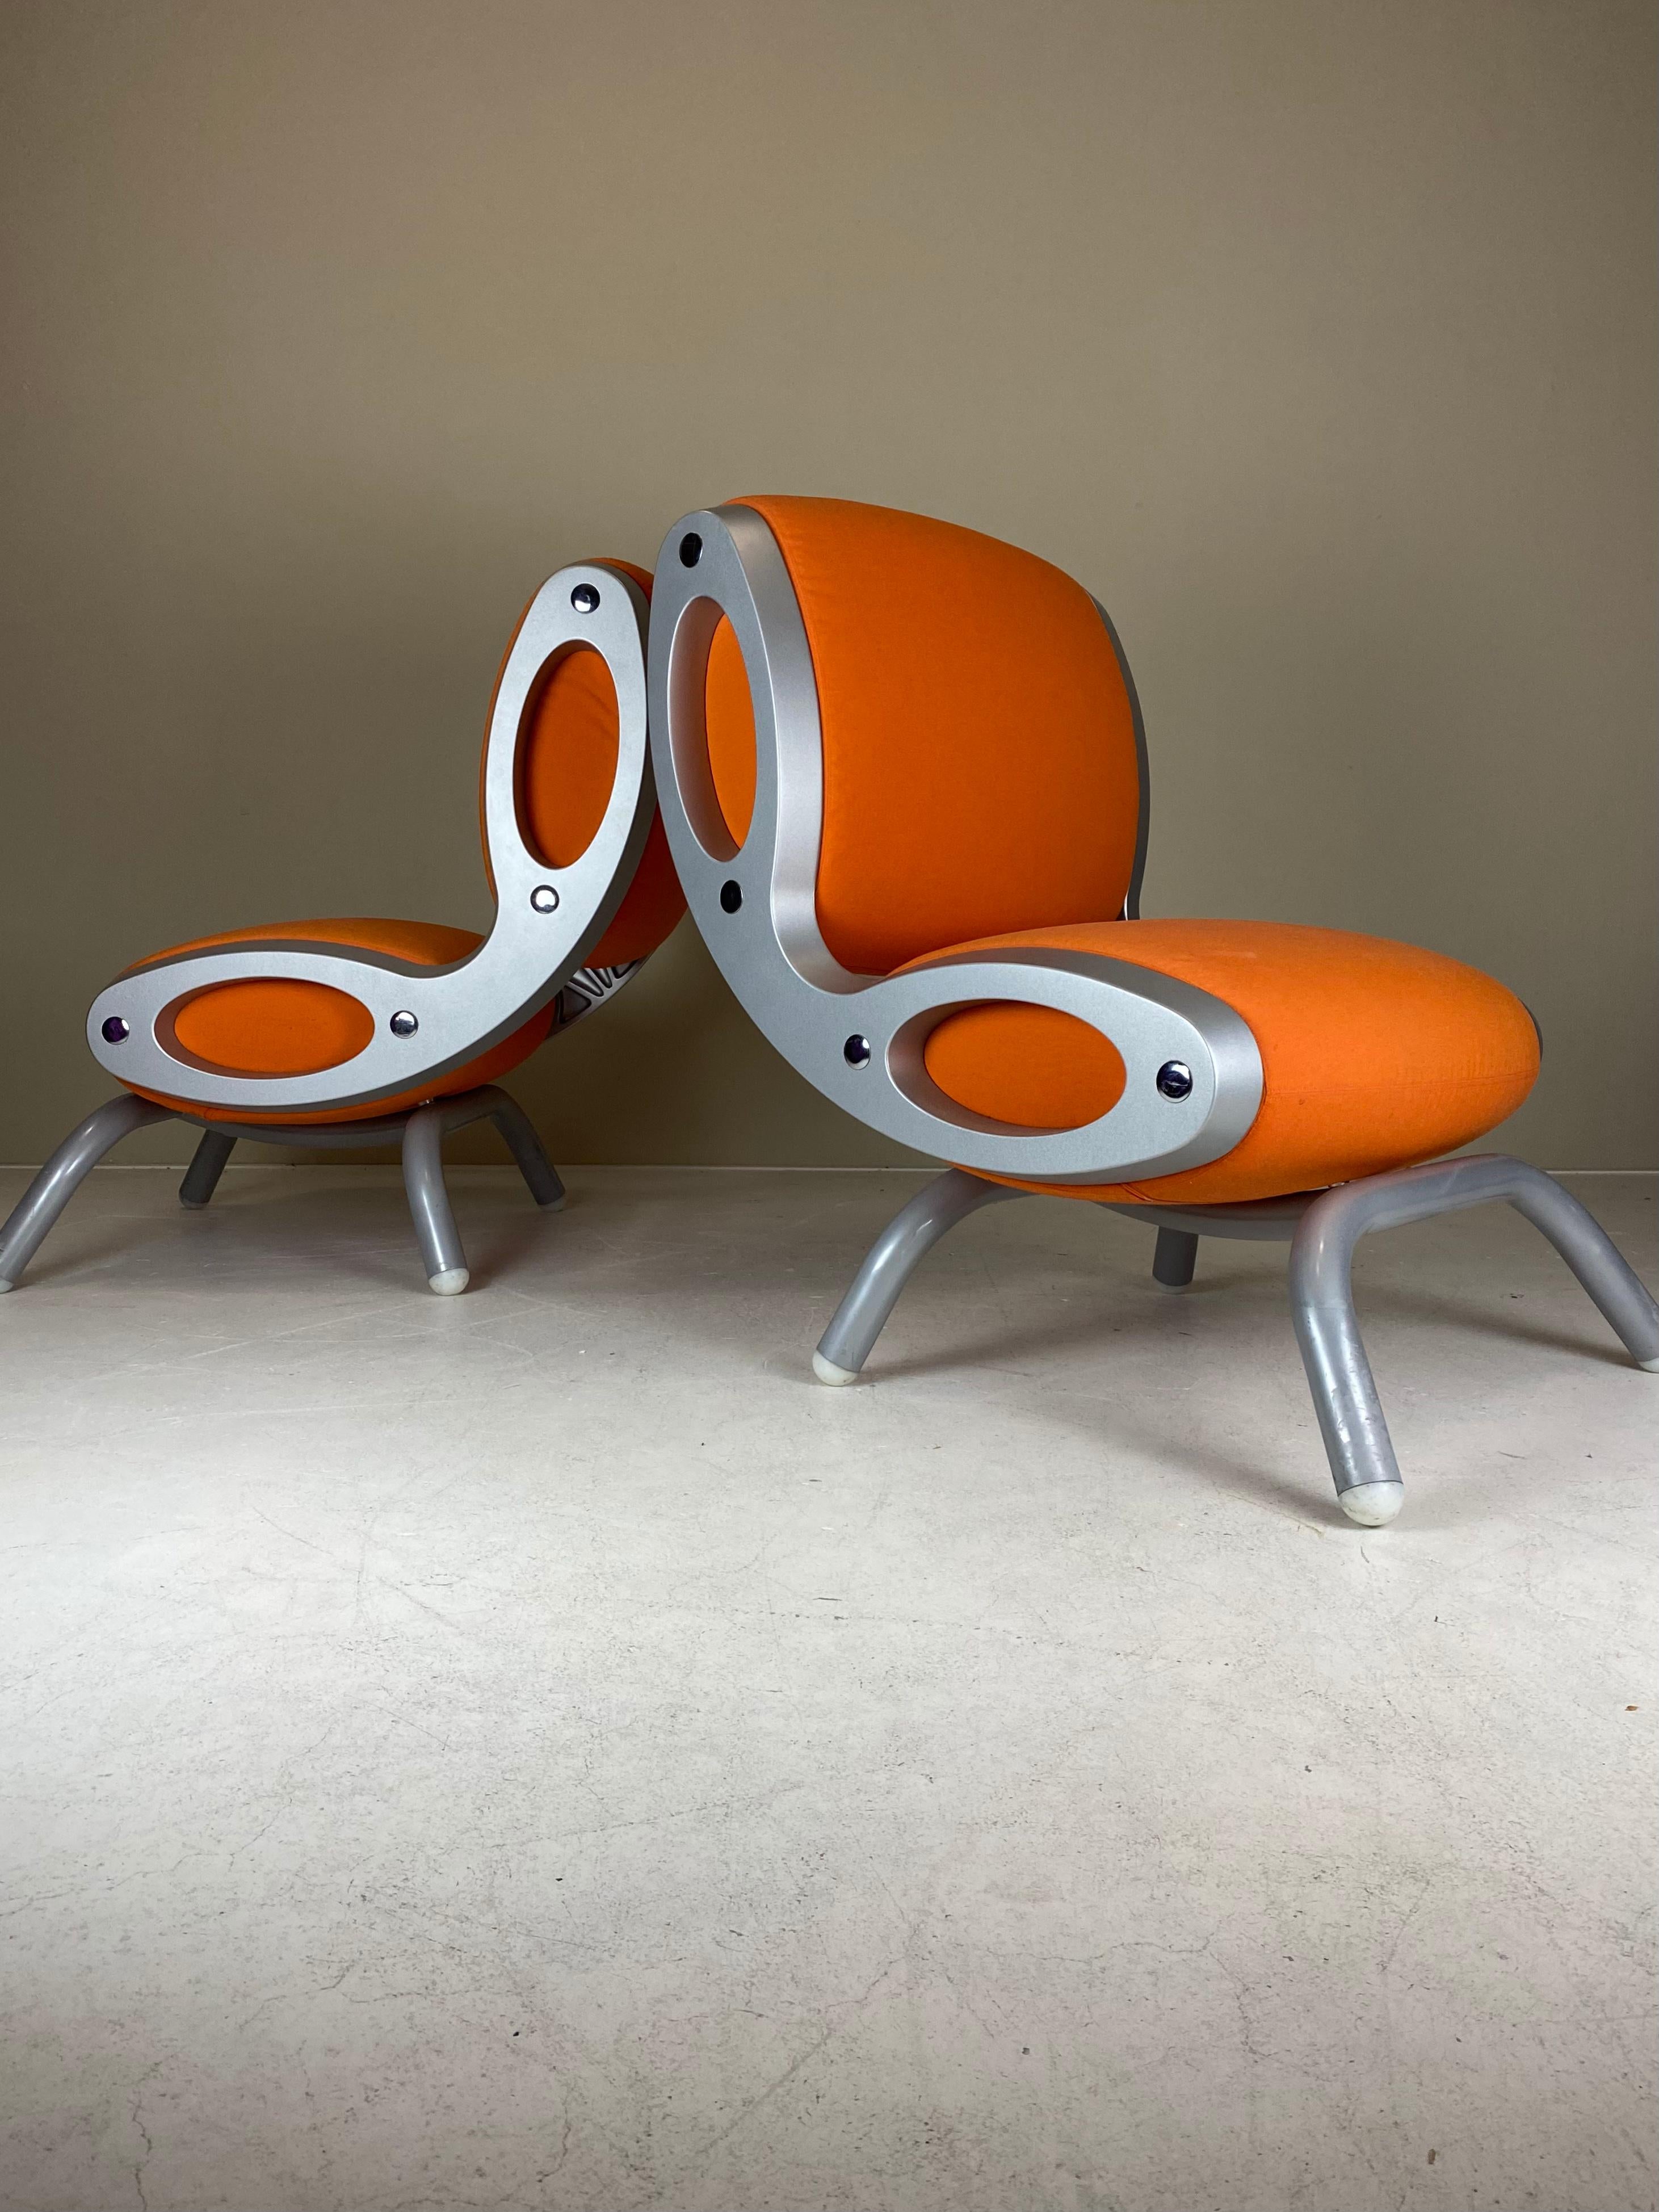 Nous proposons à la vente cet adorable et rare ensemble de deux chaises Gluon de Marc Newson, produites par Moroso dans les années 90 et qui ne sont plus produites aujourd'hui. 

La Gluon Chair a été conçue comme une chaise modulaire qui peut être